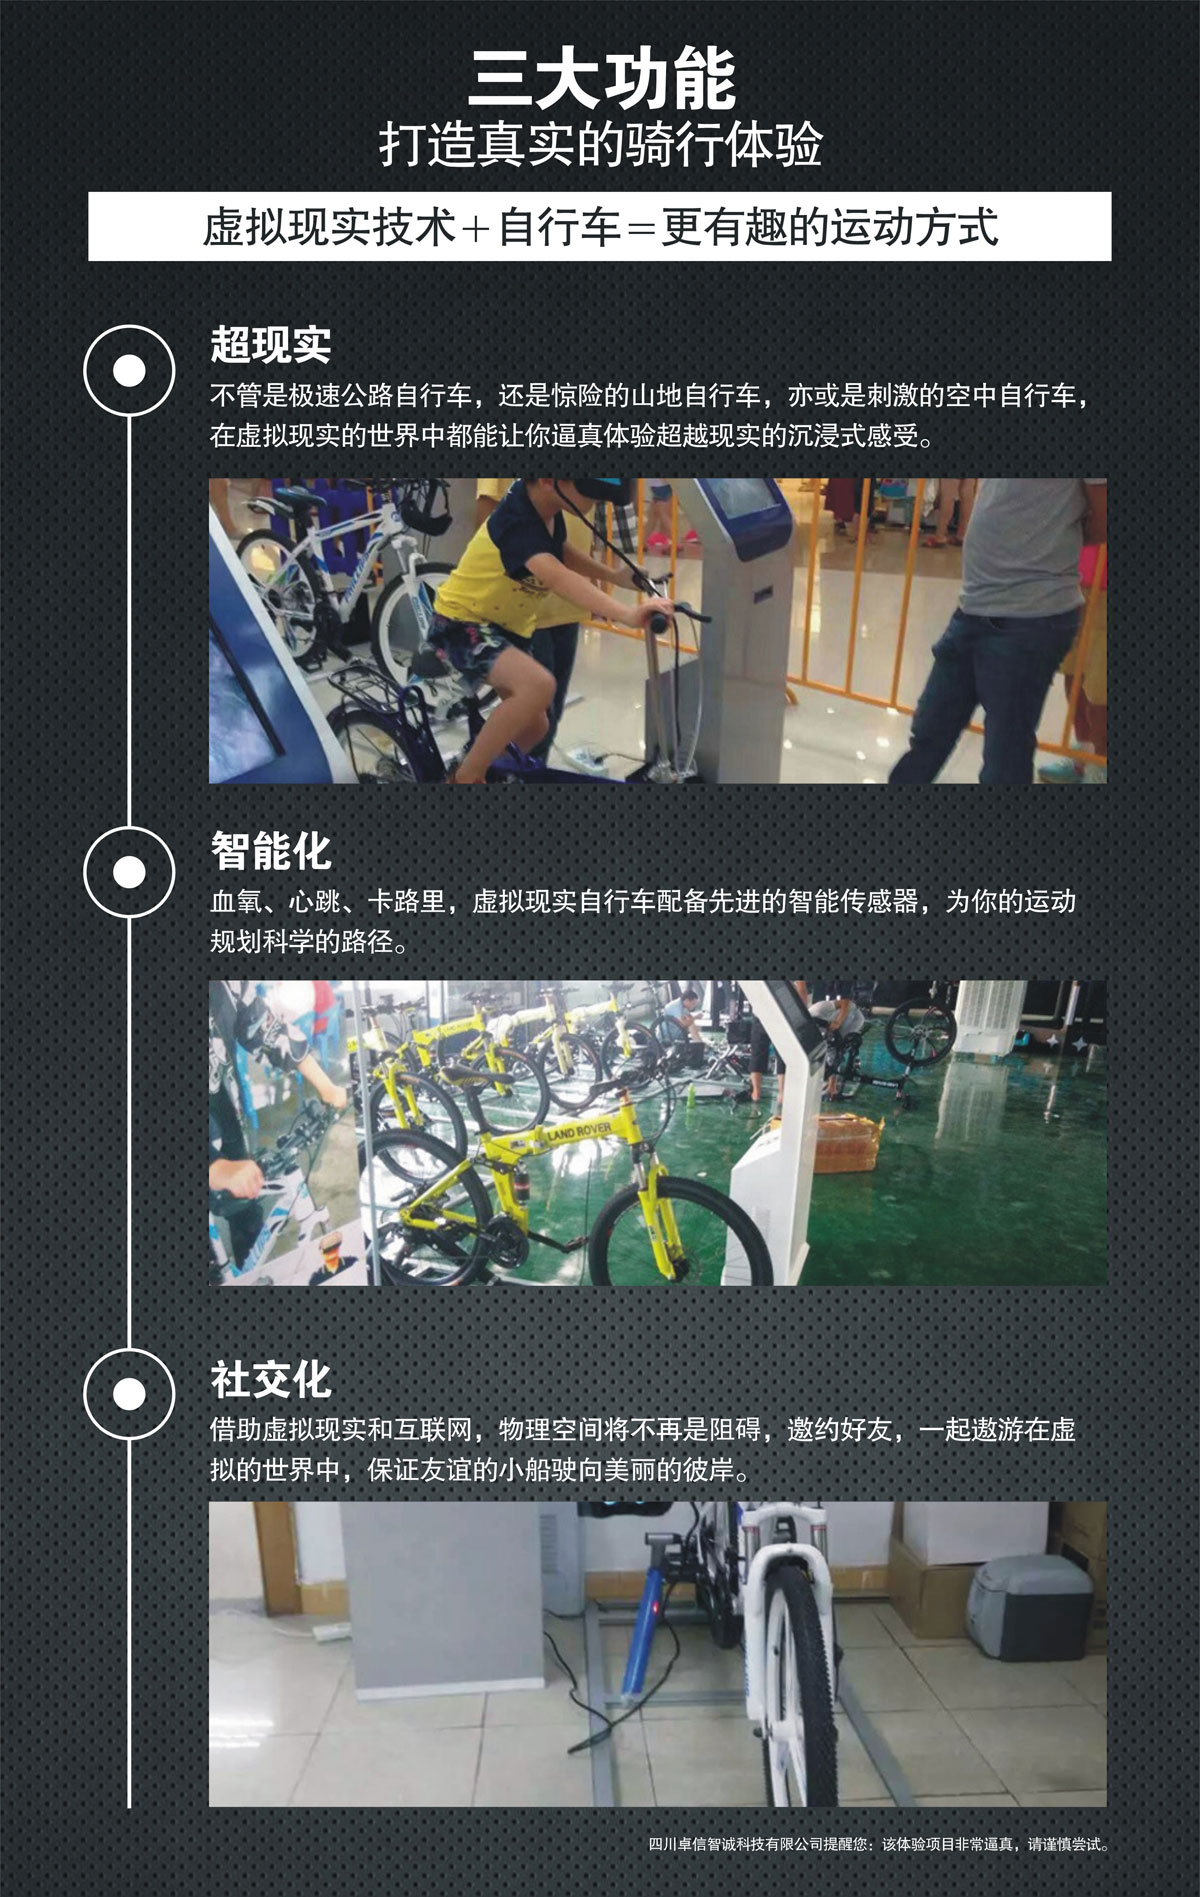 球幕影院VR自行车三大功能打造真实骑行体验.jpg